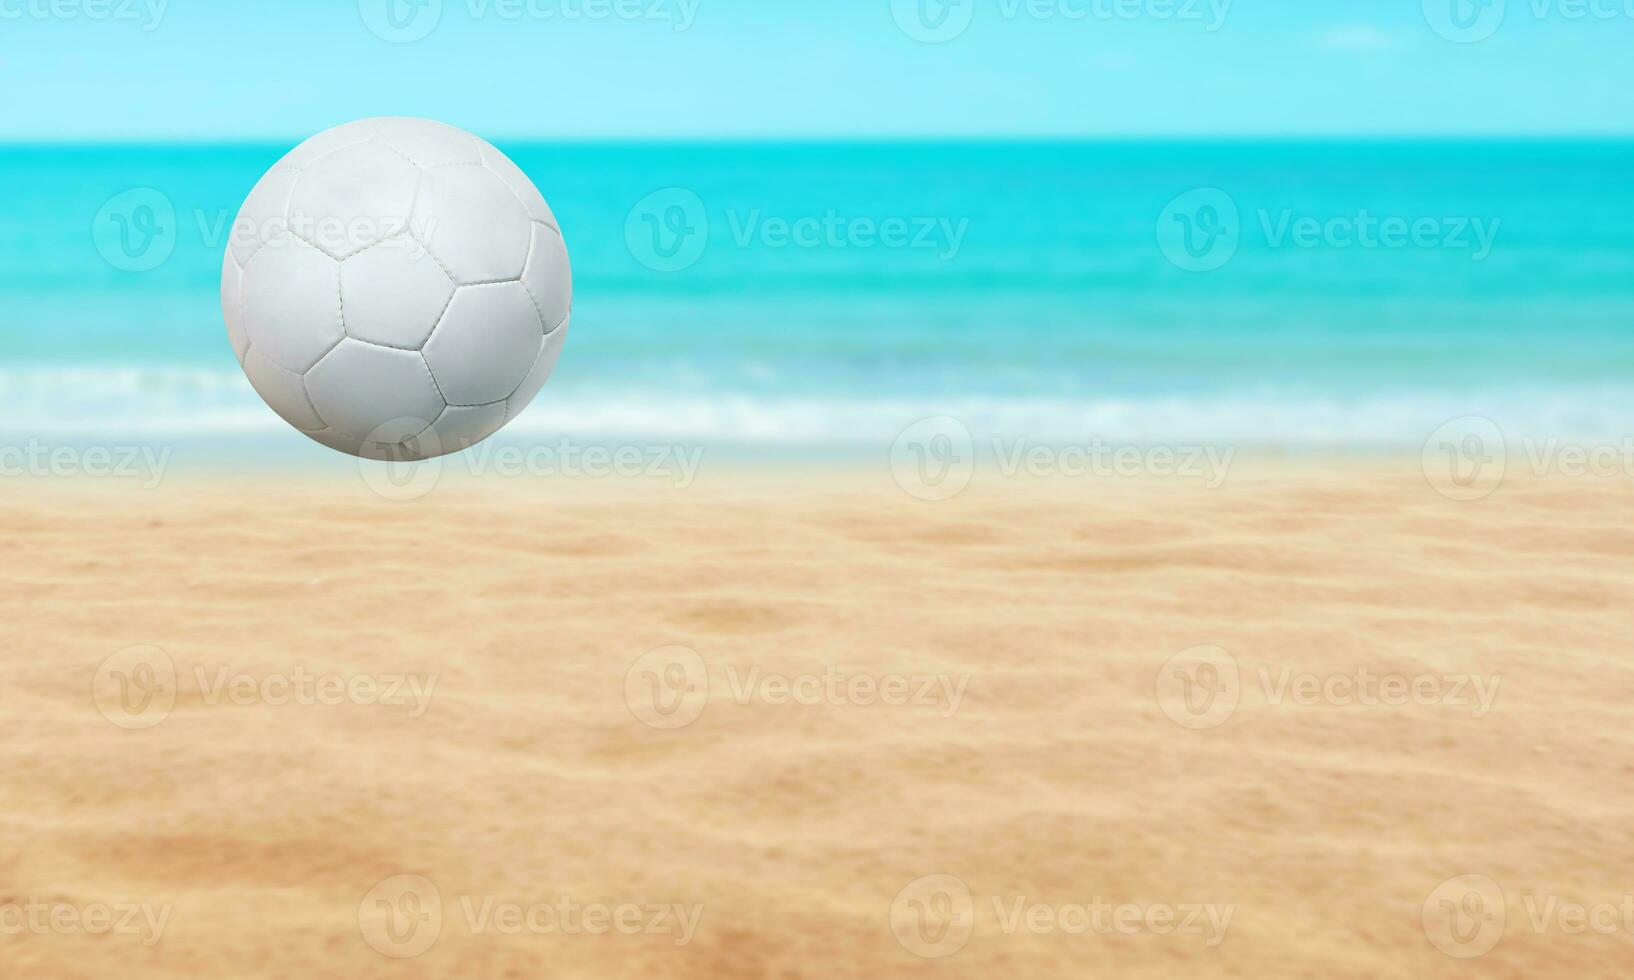 playa paisaje con fútbol pelota, verano temporada y agua y azul cielo antecedentes. foto